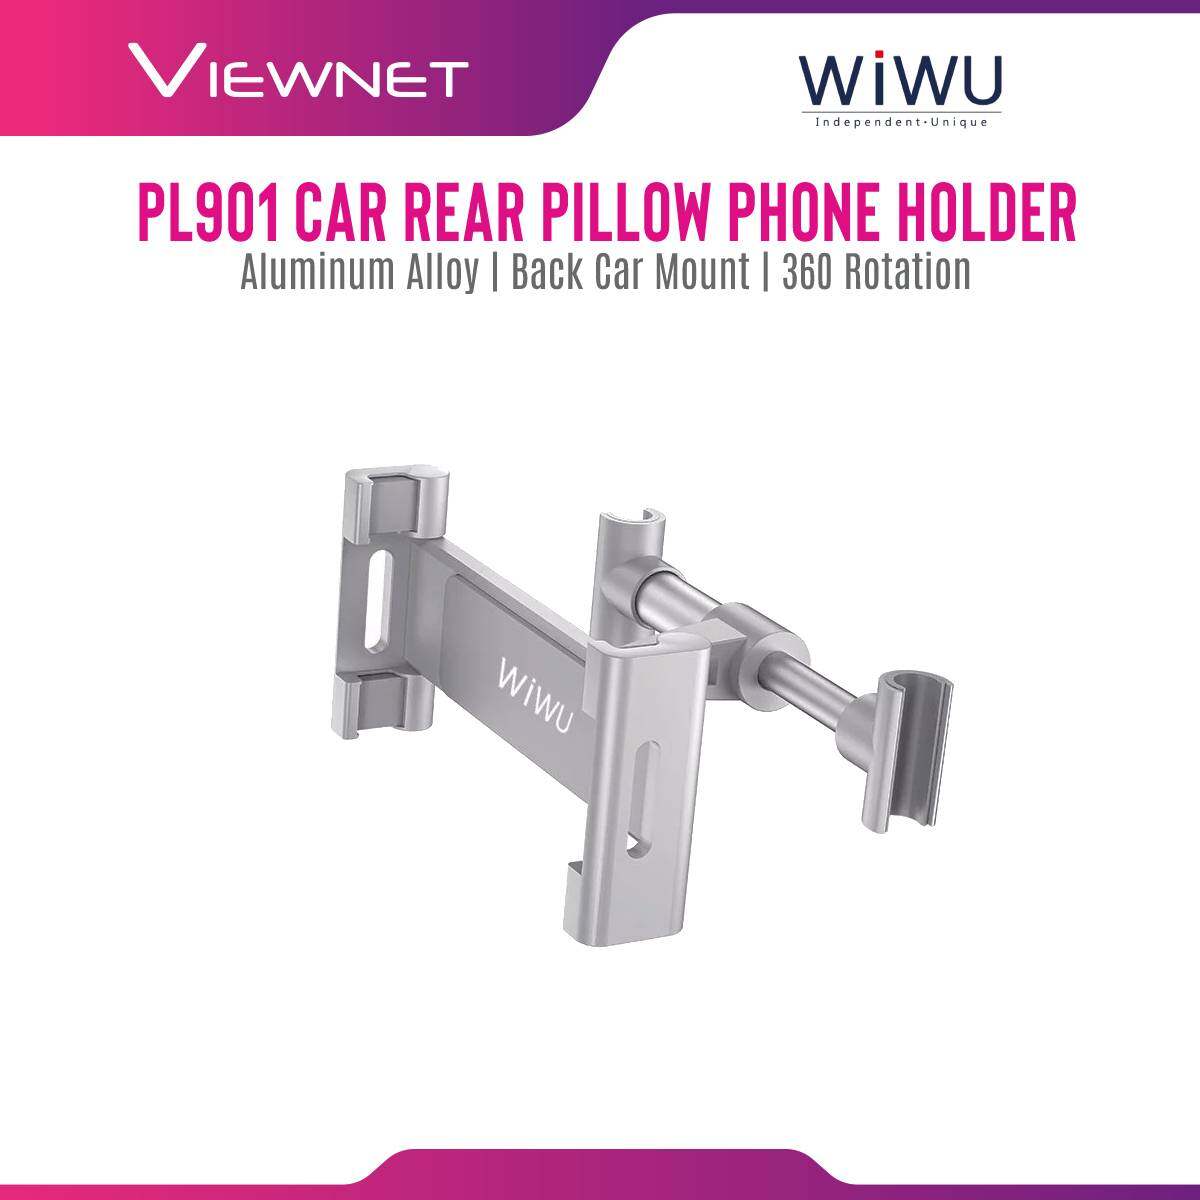 Wiwu PL901 Car Rear Pillow Phone Holder